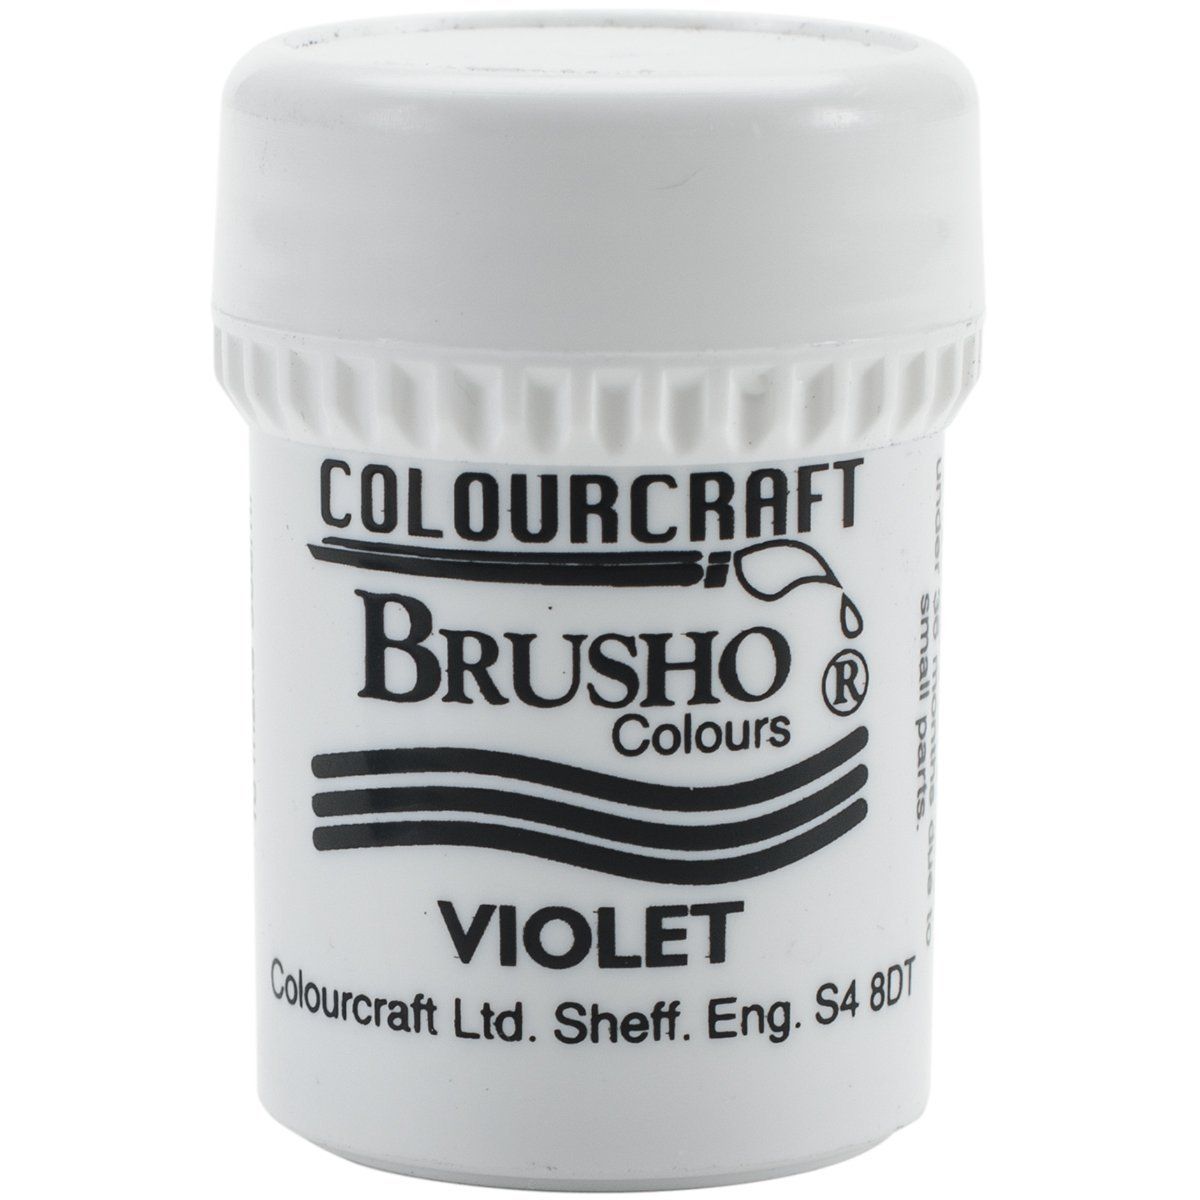 Brusho Crystal Colour - Violet